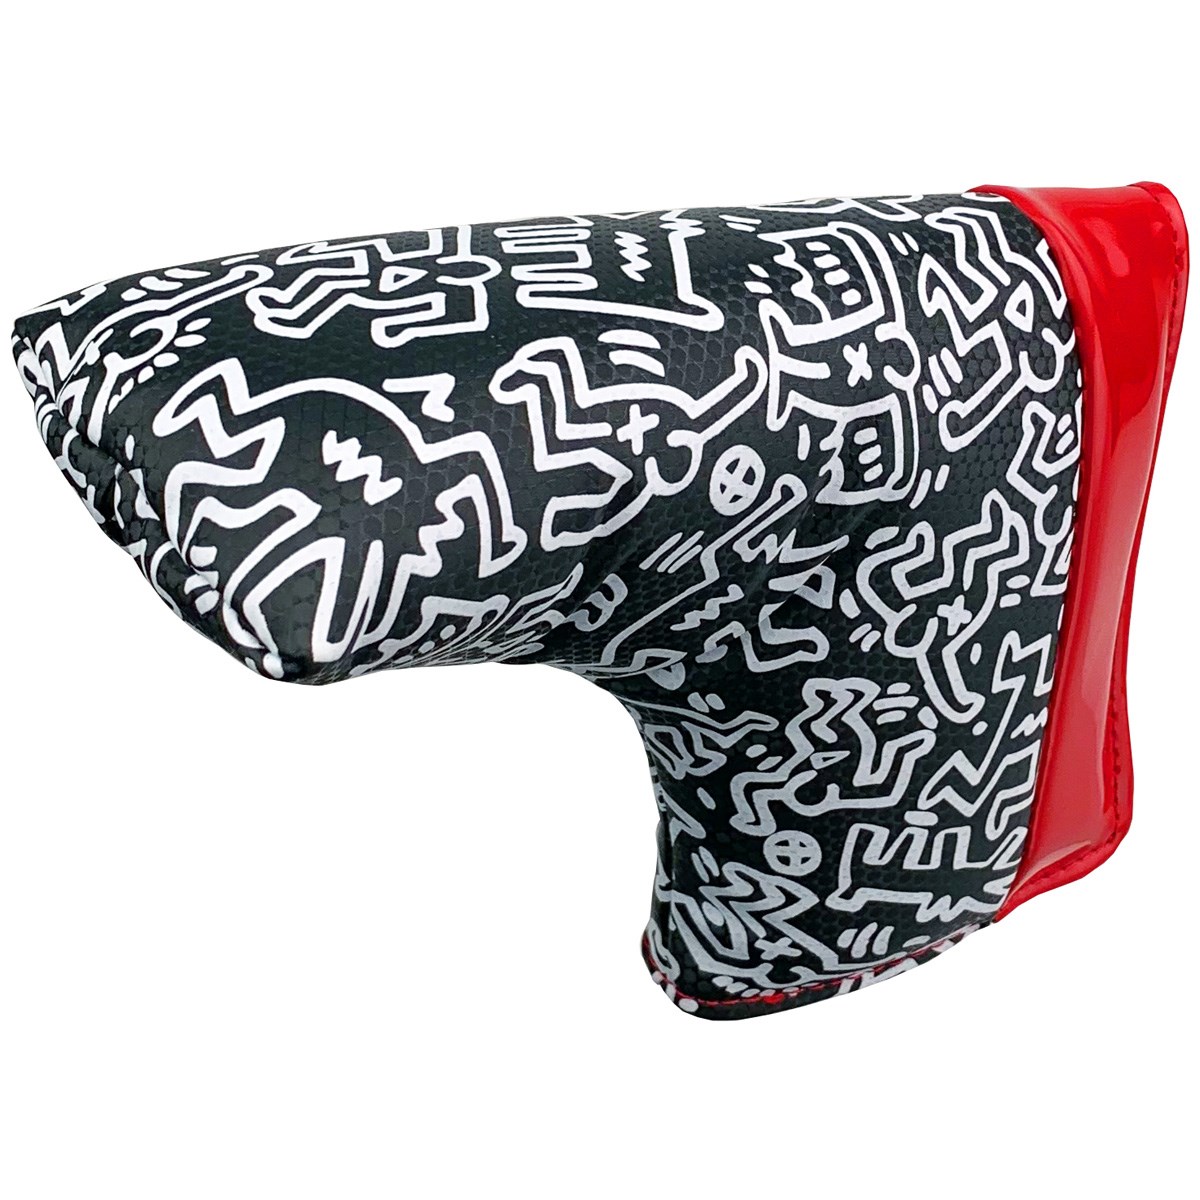 Dショッピング キース ヘリング Keith Haring パターカバー ブラック カテゴリ ヘッドカバーの販売できる商品 Gdoゴルフショップ ドコモの通販サイト